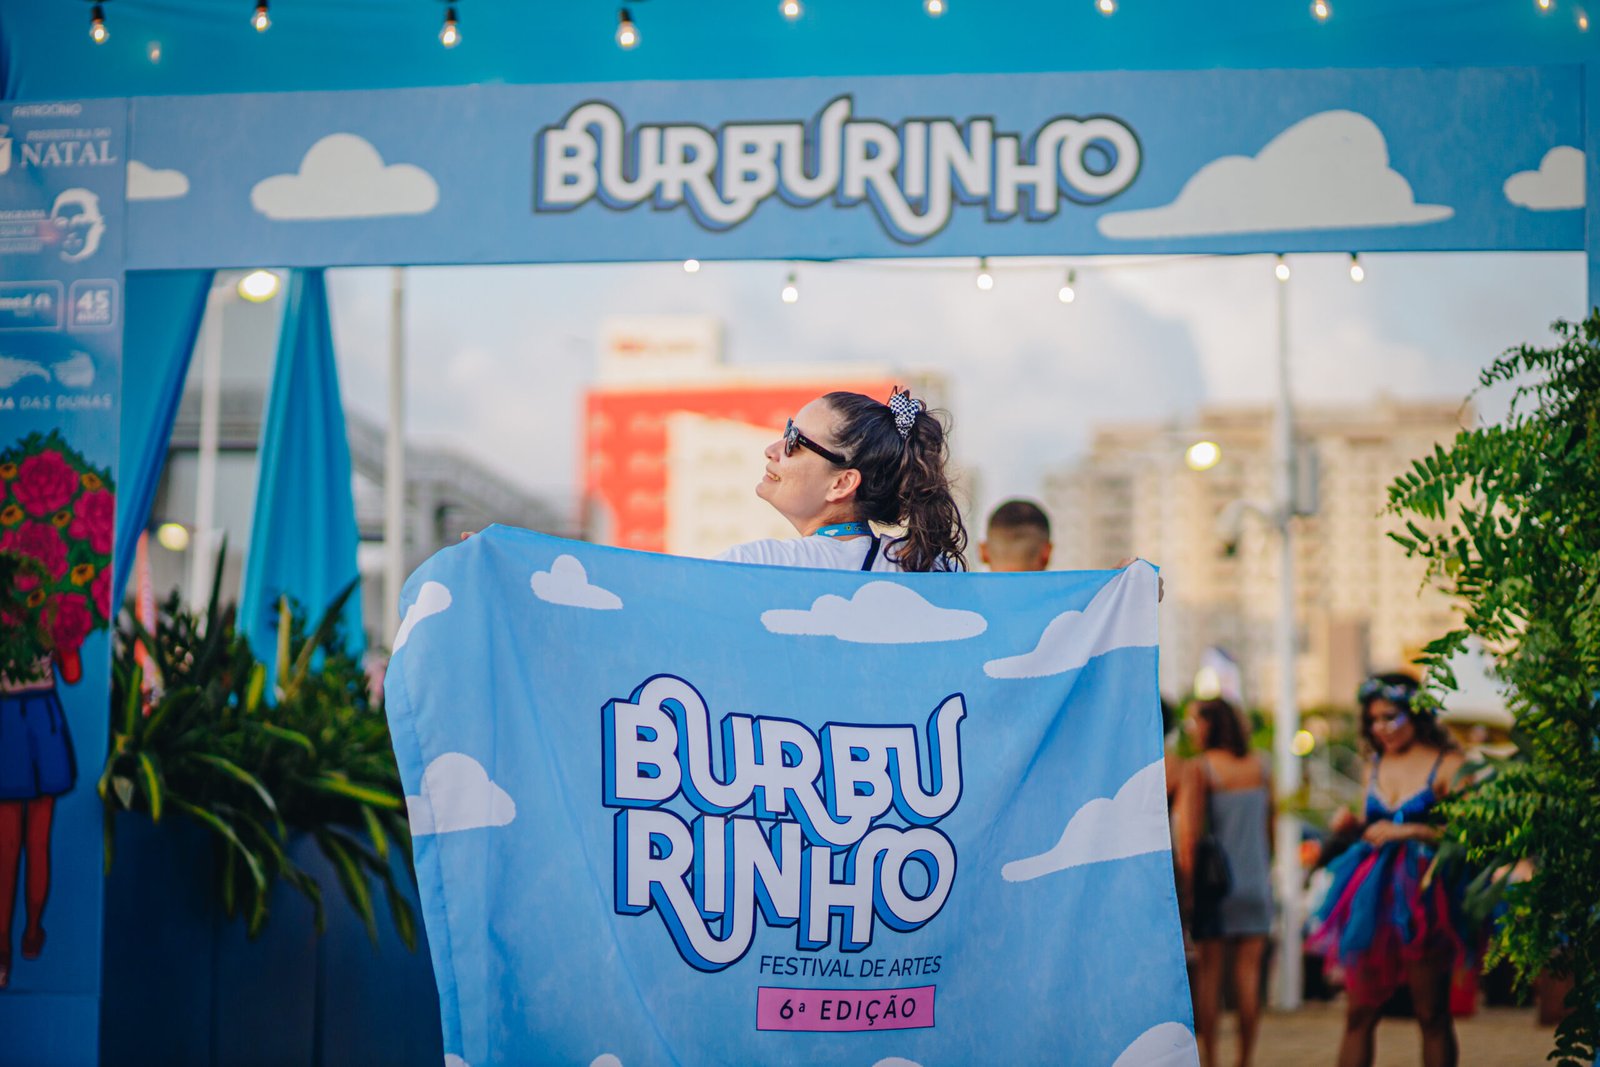 Burburinho Festival de Artes anuncia a sua 7ª edição para 4 e 5 de novembro